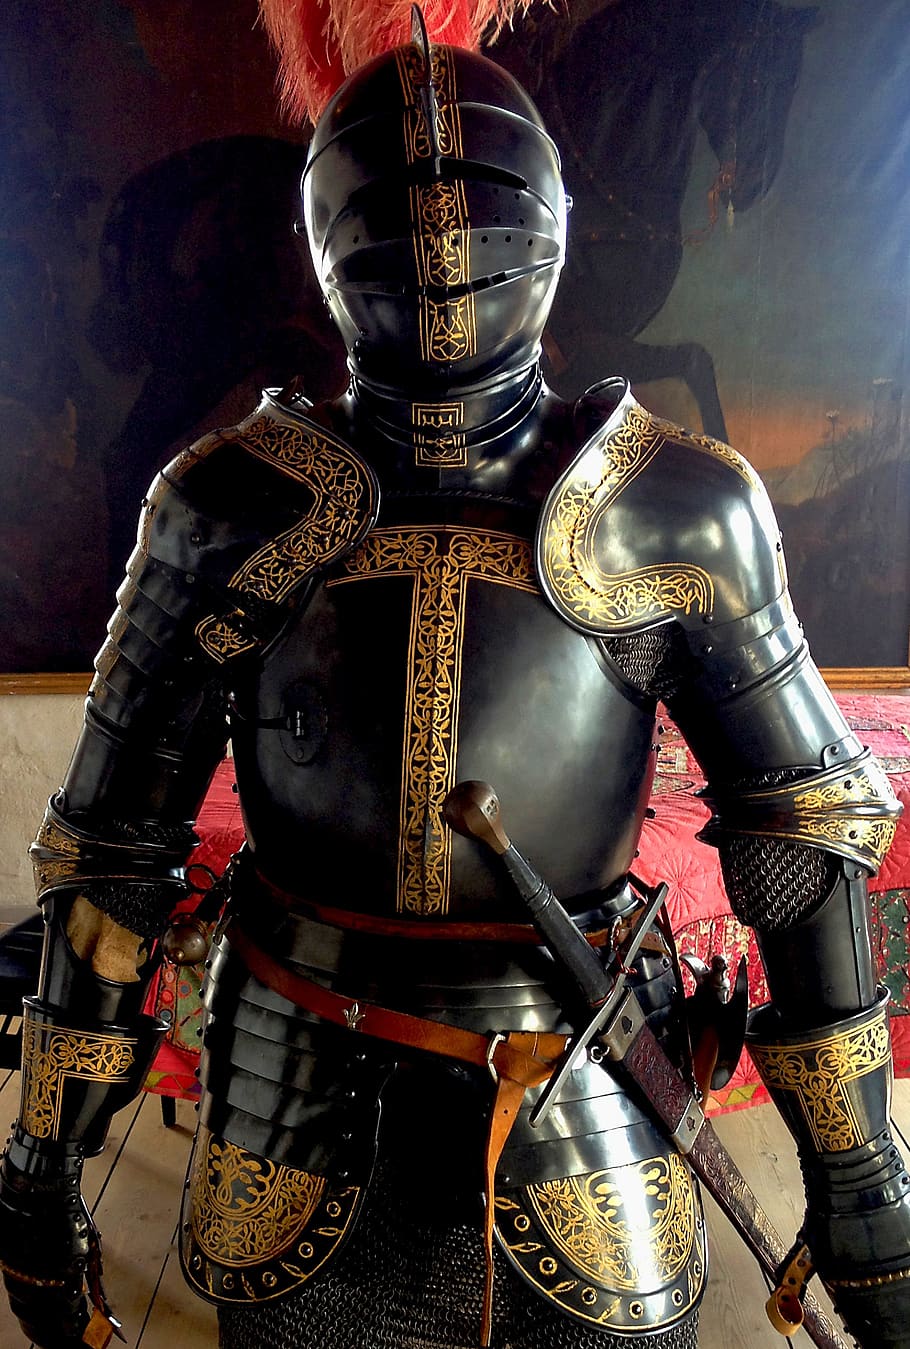 armor, sword, combat helmet, warrior, weapons, shield, match, war, architecture, suit of armor